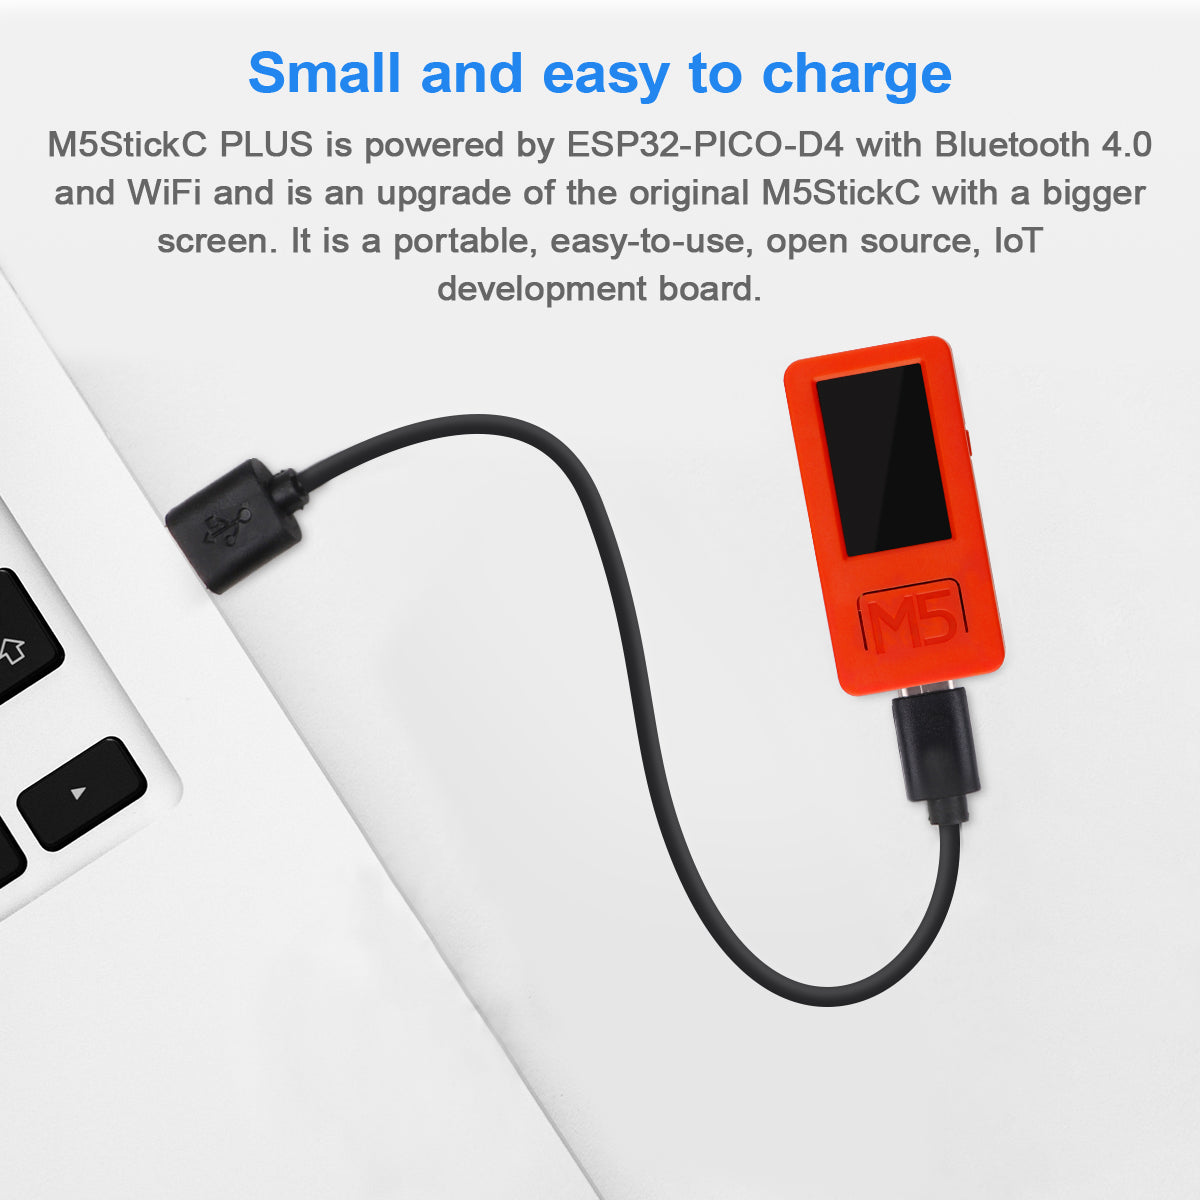 M5StickC PLUS ESP32-PICO Mini IoT Development Kit – MakerFocus